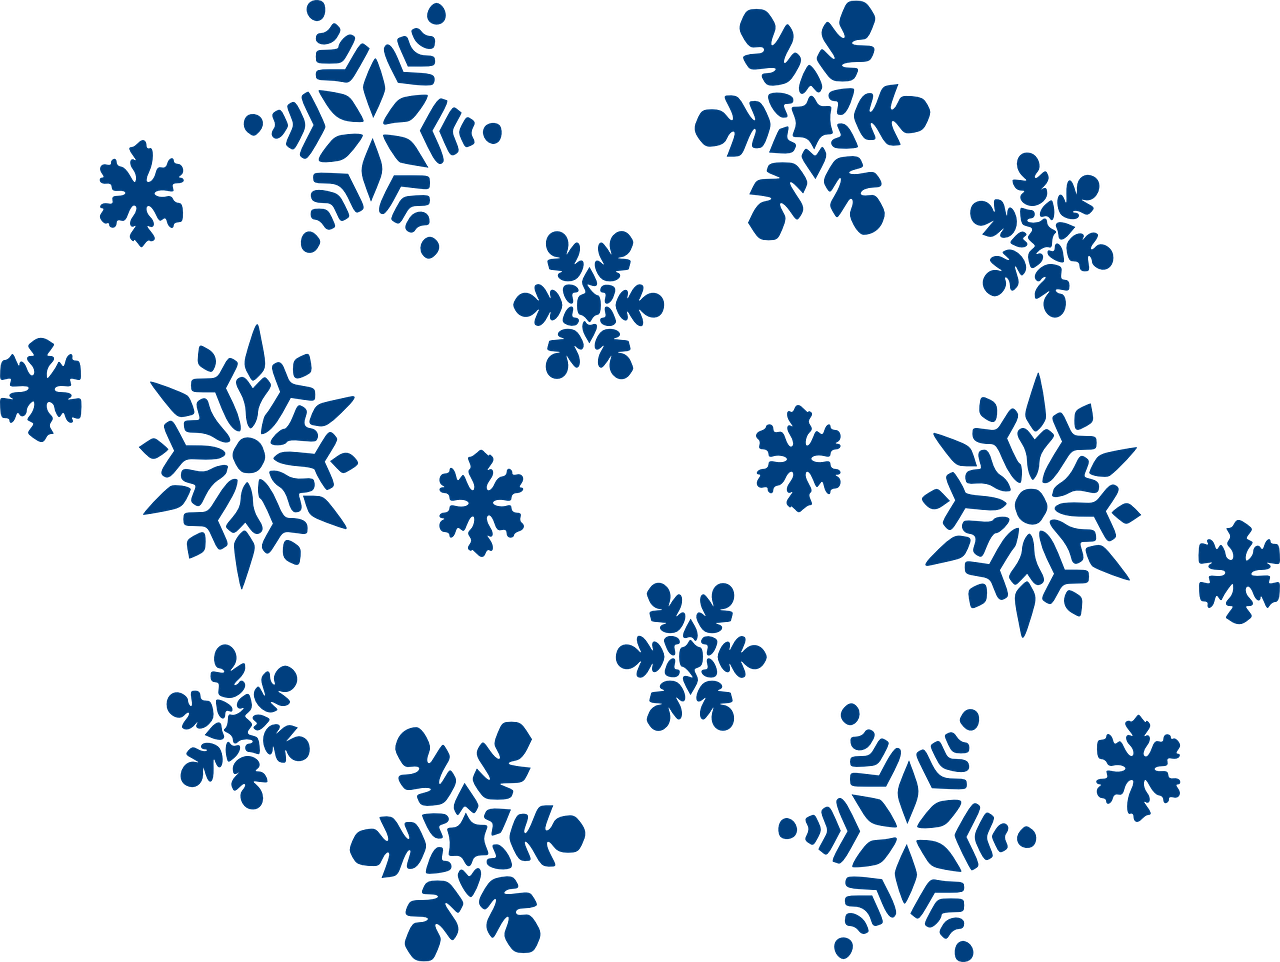 Pogoda - The weather - Angielski od podstaw - Angielski słówka - snowflakes